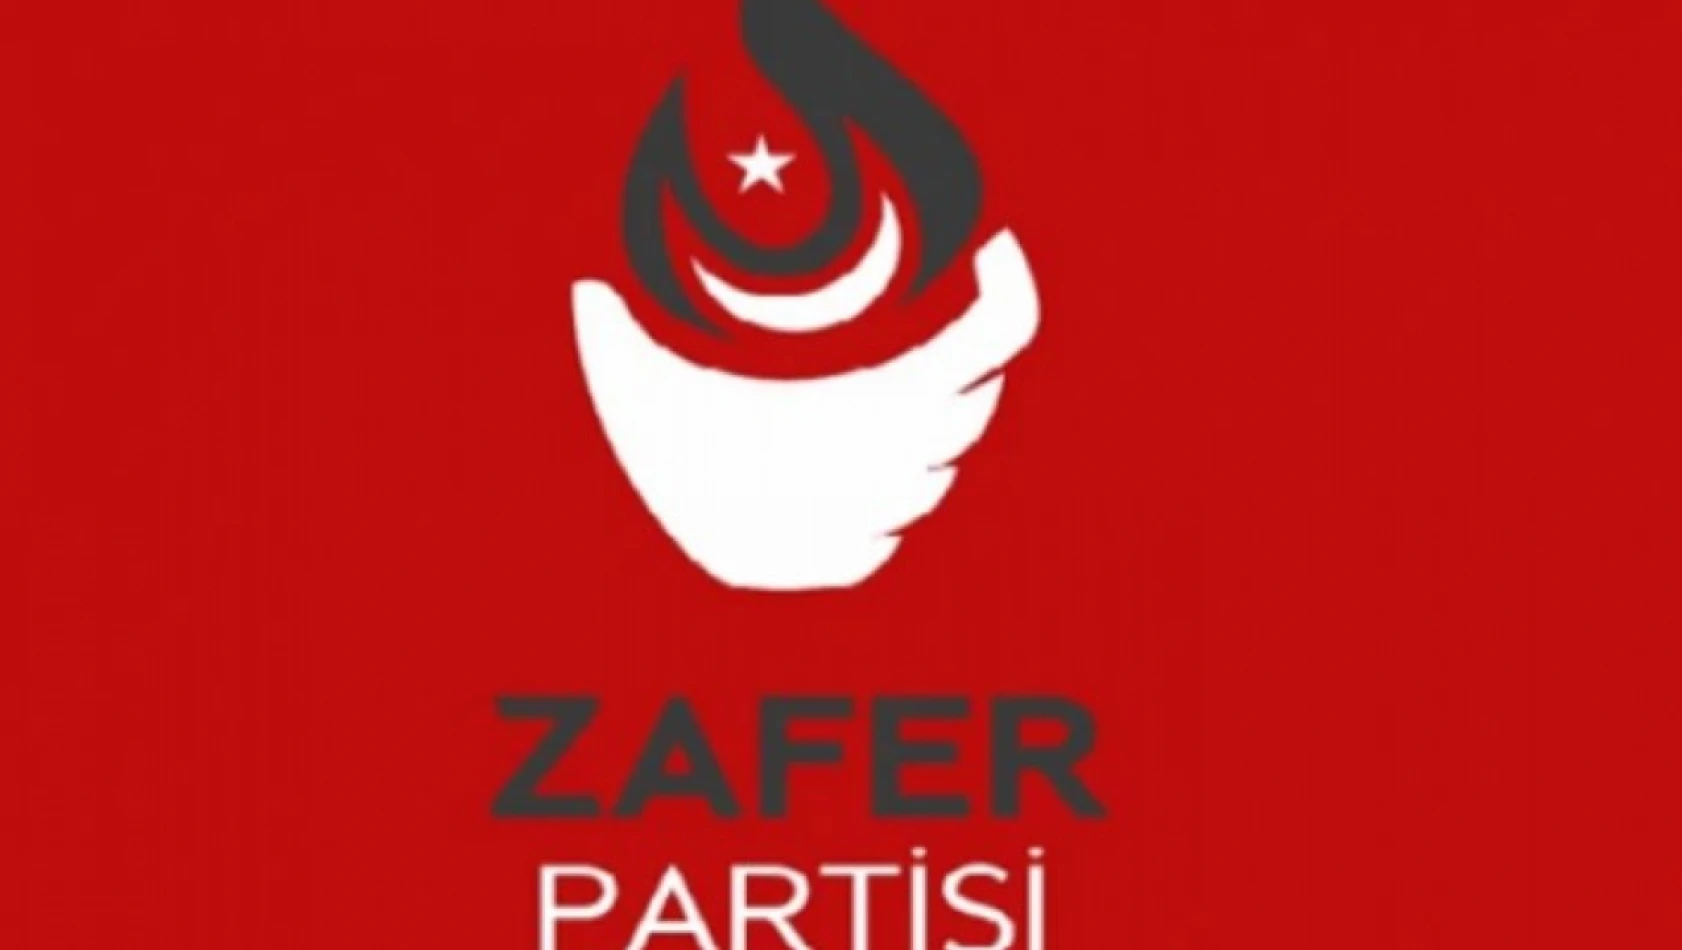 Zafer Partisi'nden 'Türk Milleti ile dalga geçiyorlar' paylaşımı - Sosyal medya yıkıldı!